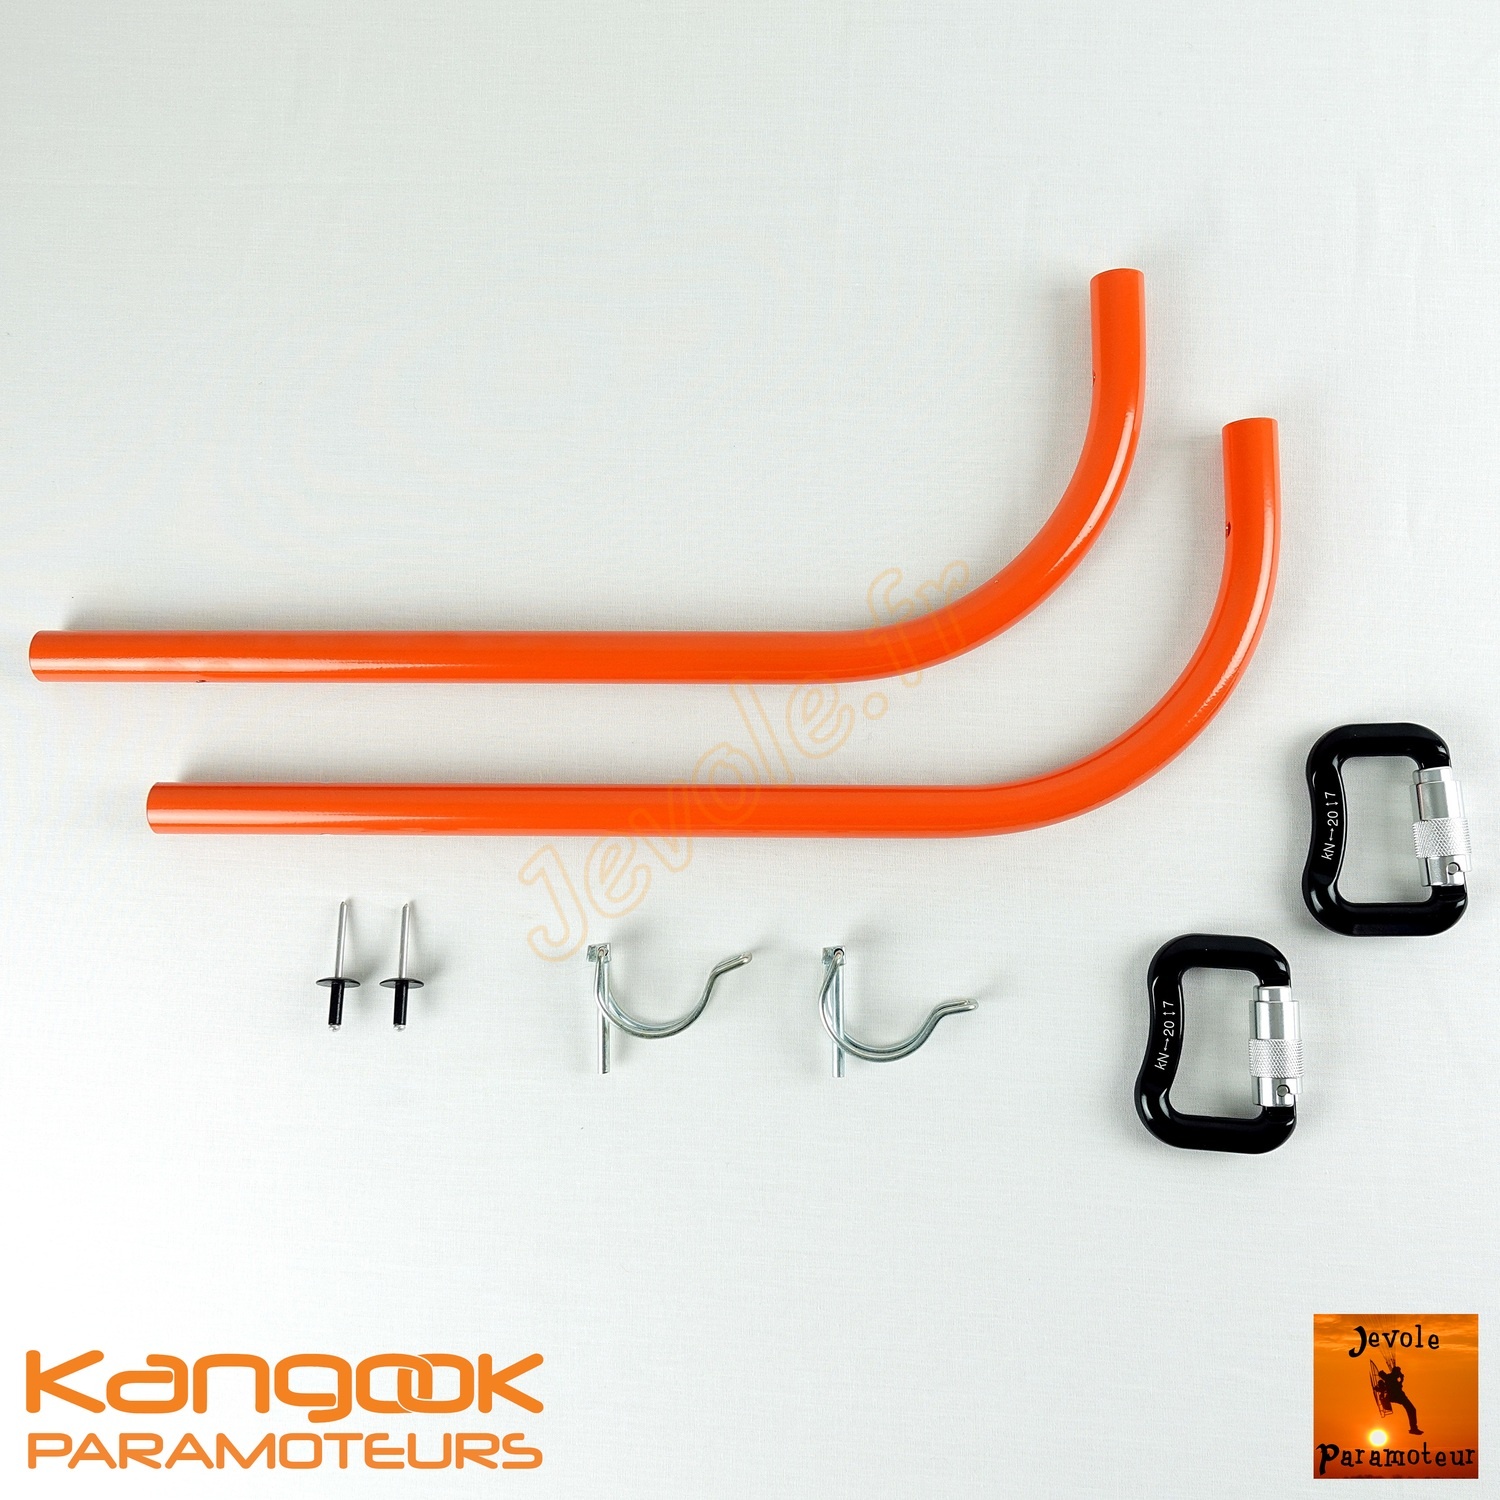 K1al-kit-cannes-en-J-fixes-alu-kangook-orange